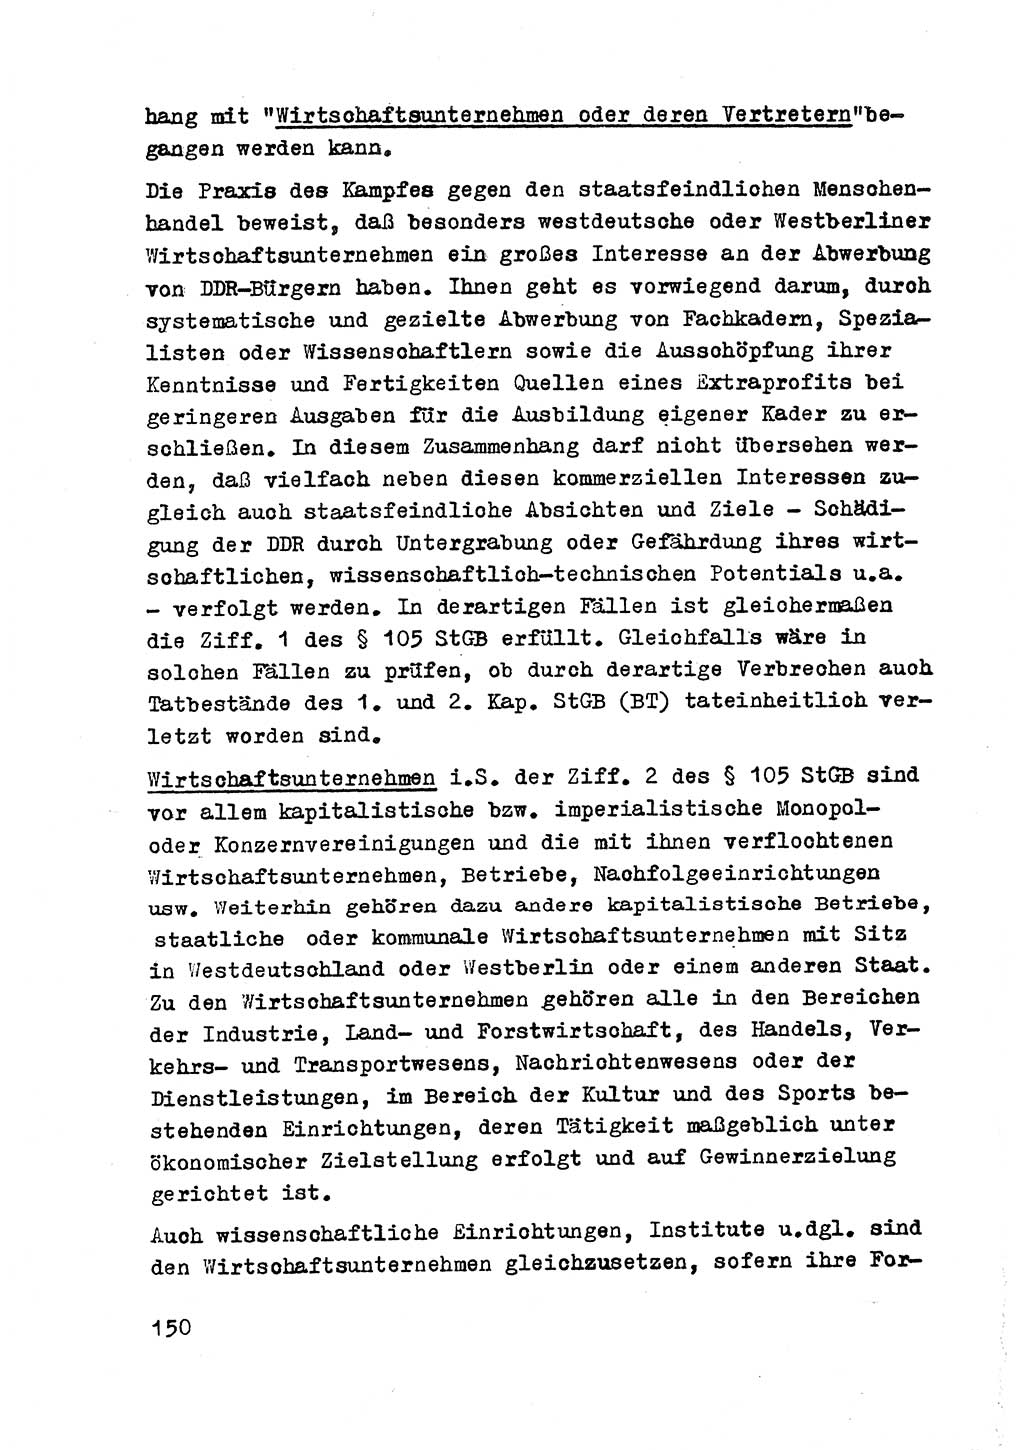 Strafrecht der DDR (Deutsche Demokratische Republik), Besonderer Teil, Lehrmaterial, Heft 2 1969, Seite 150 (Strafr. DDR BT Lehrmat. H. 2 1969, S. 150)